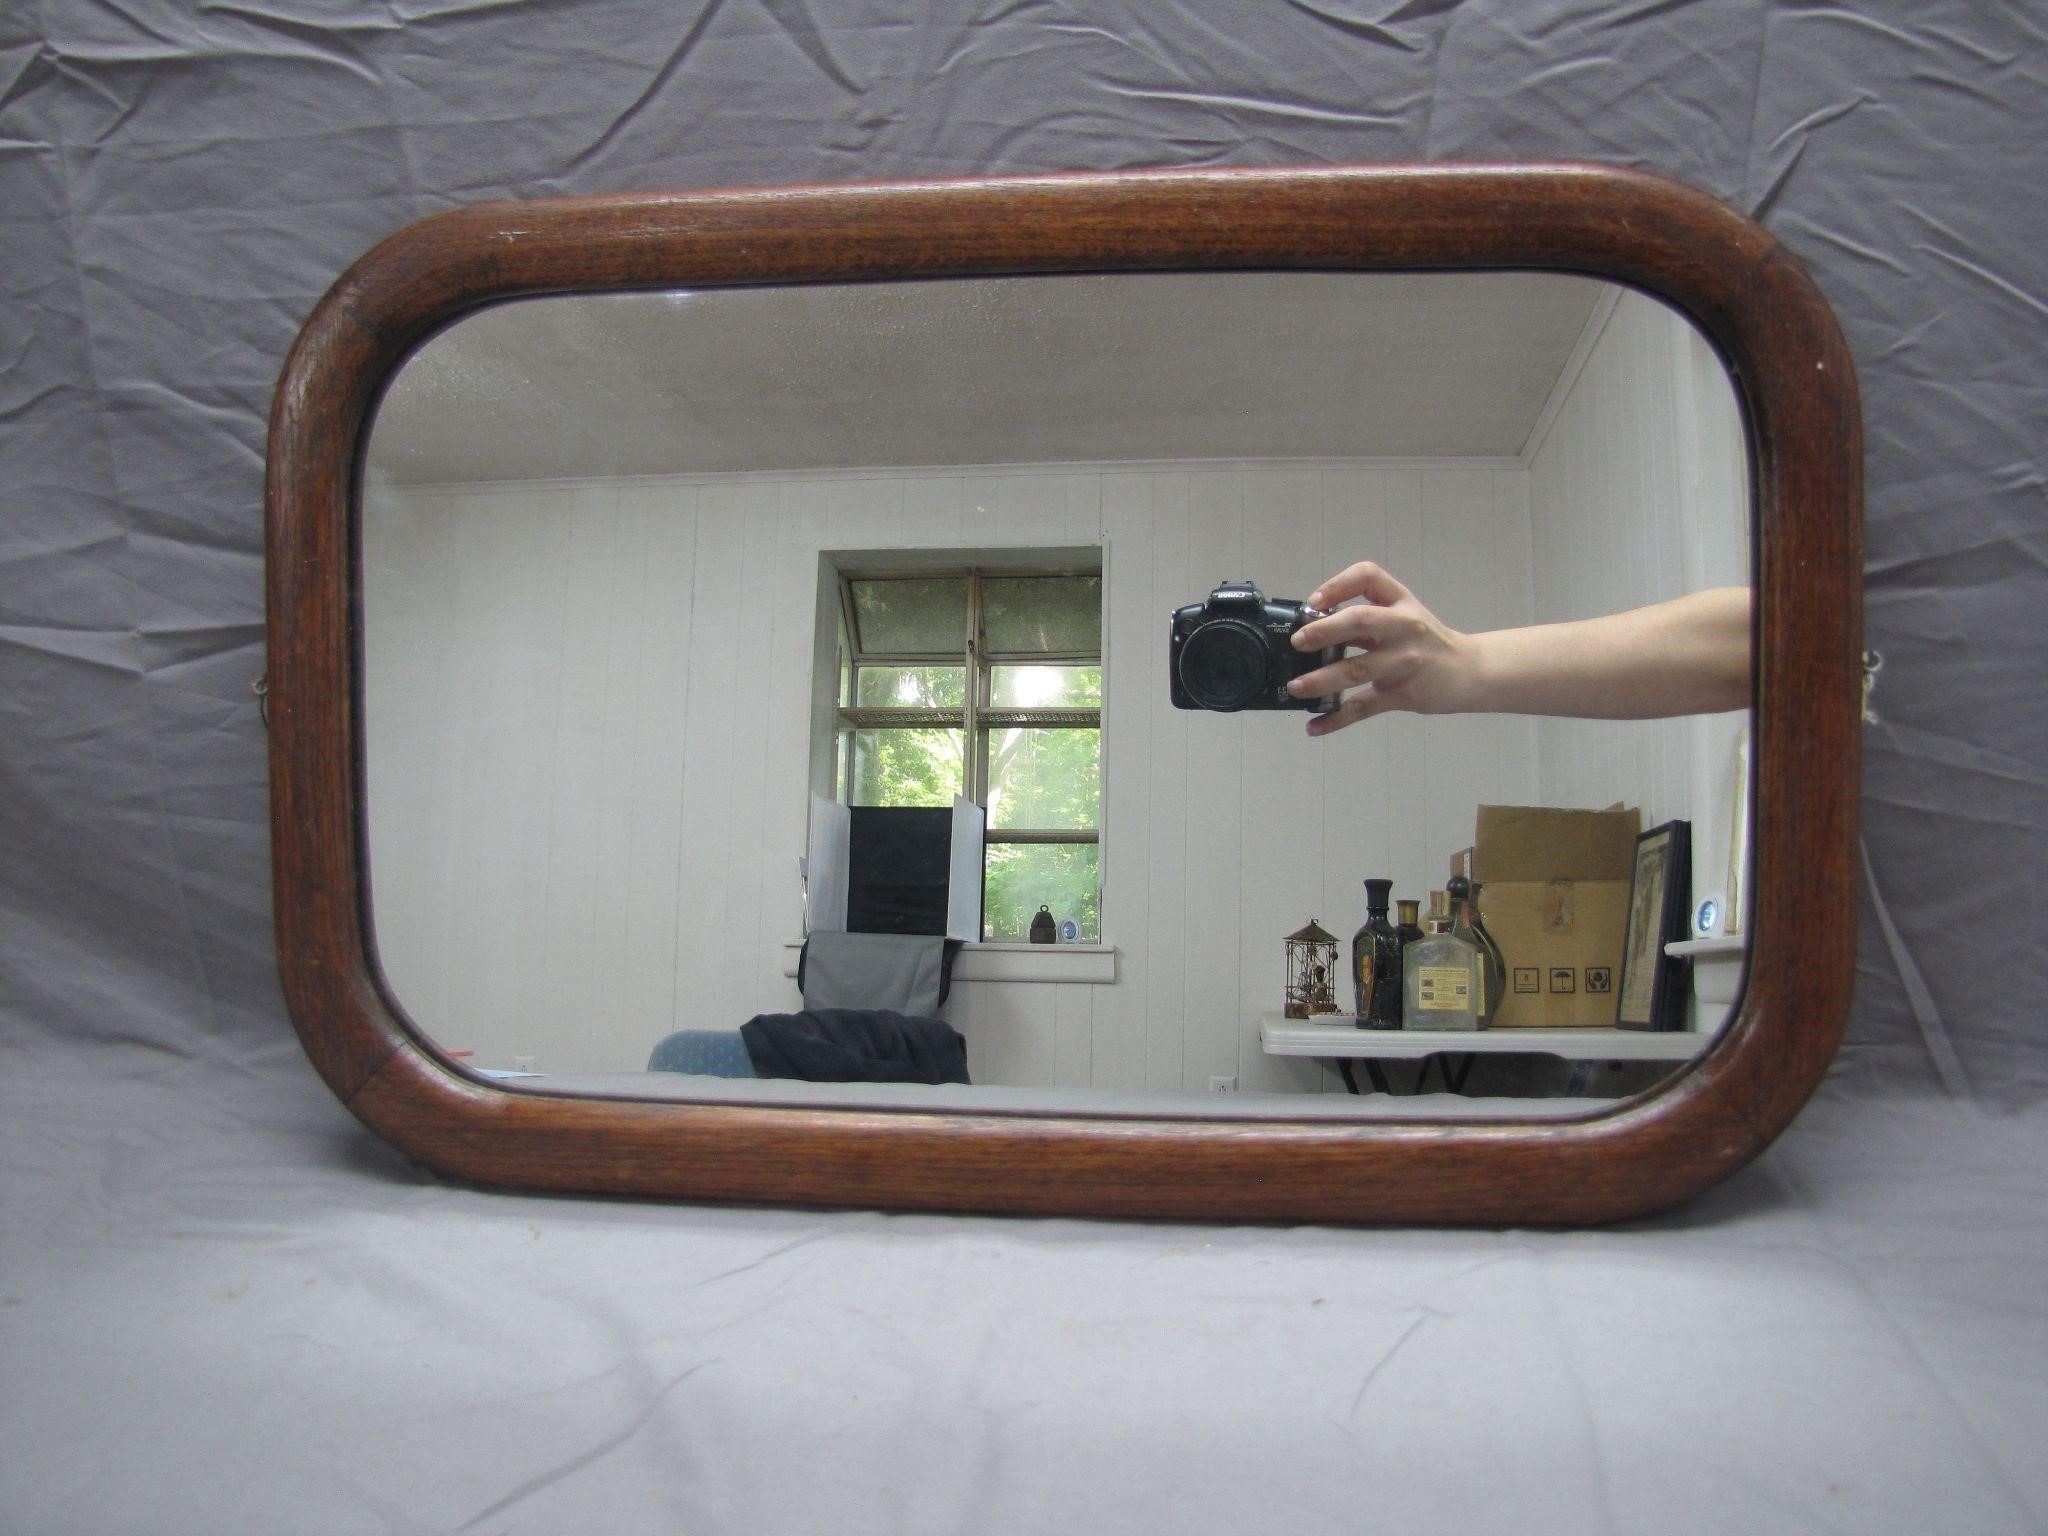 Vintage Wooden Framed Mirror